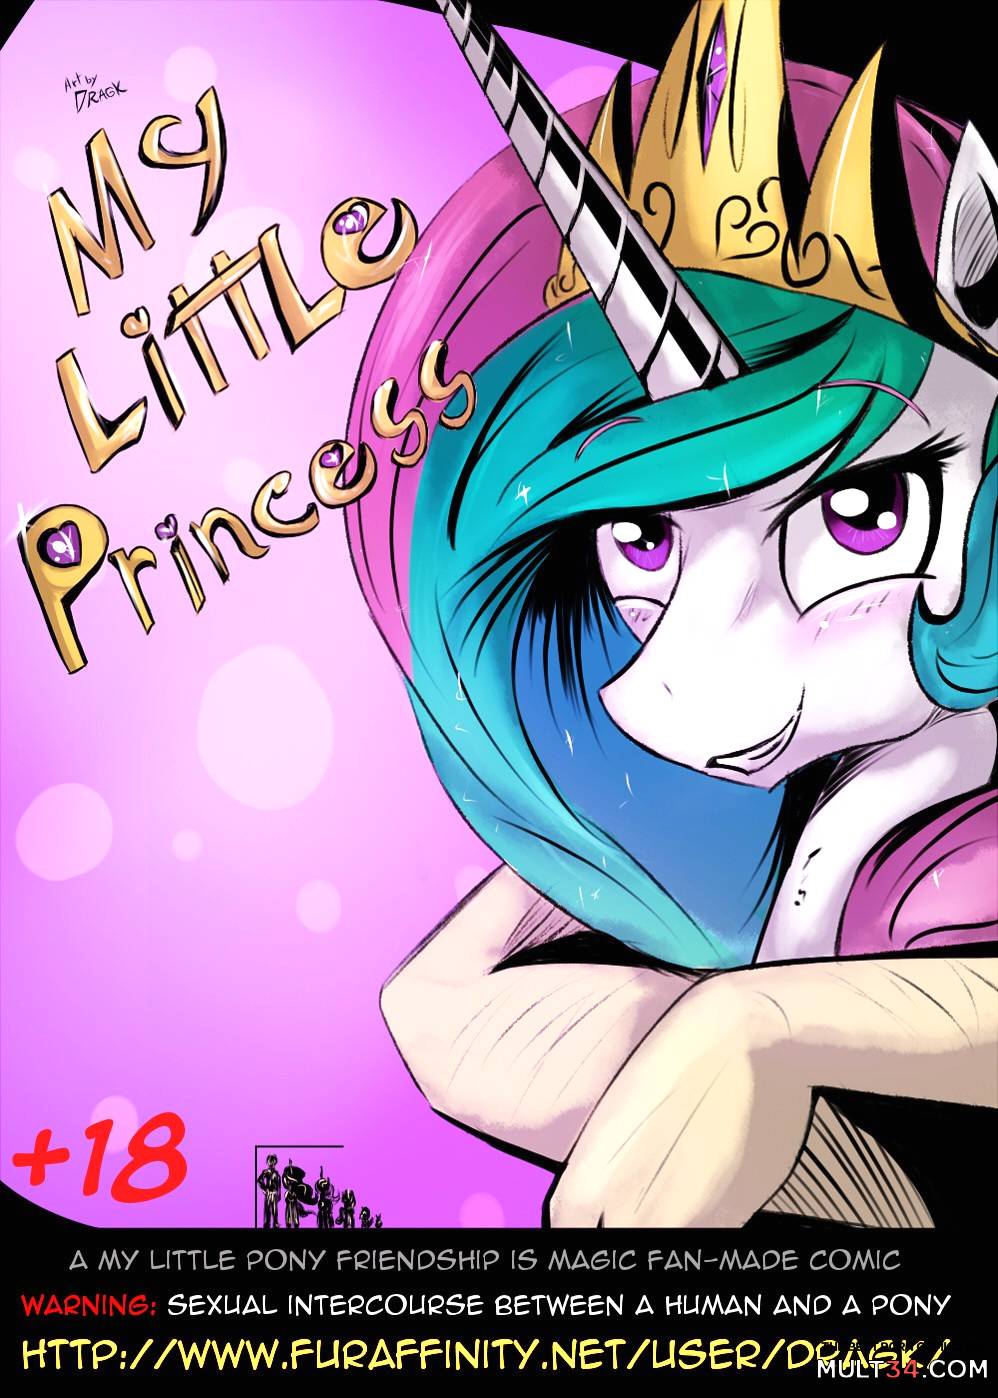 My Little Princess porn comic - the best cartoon porn comics, Rule 34 |  MULT34